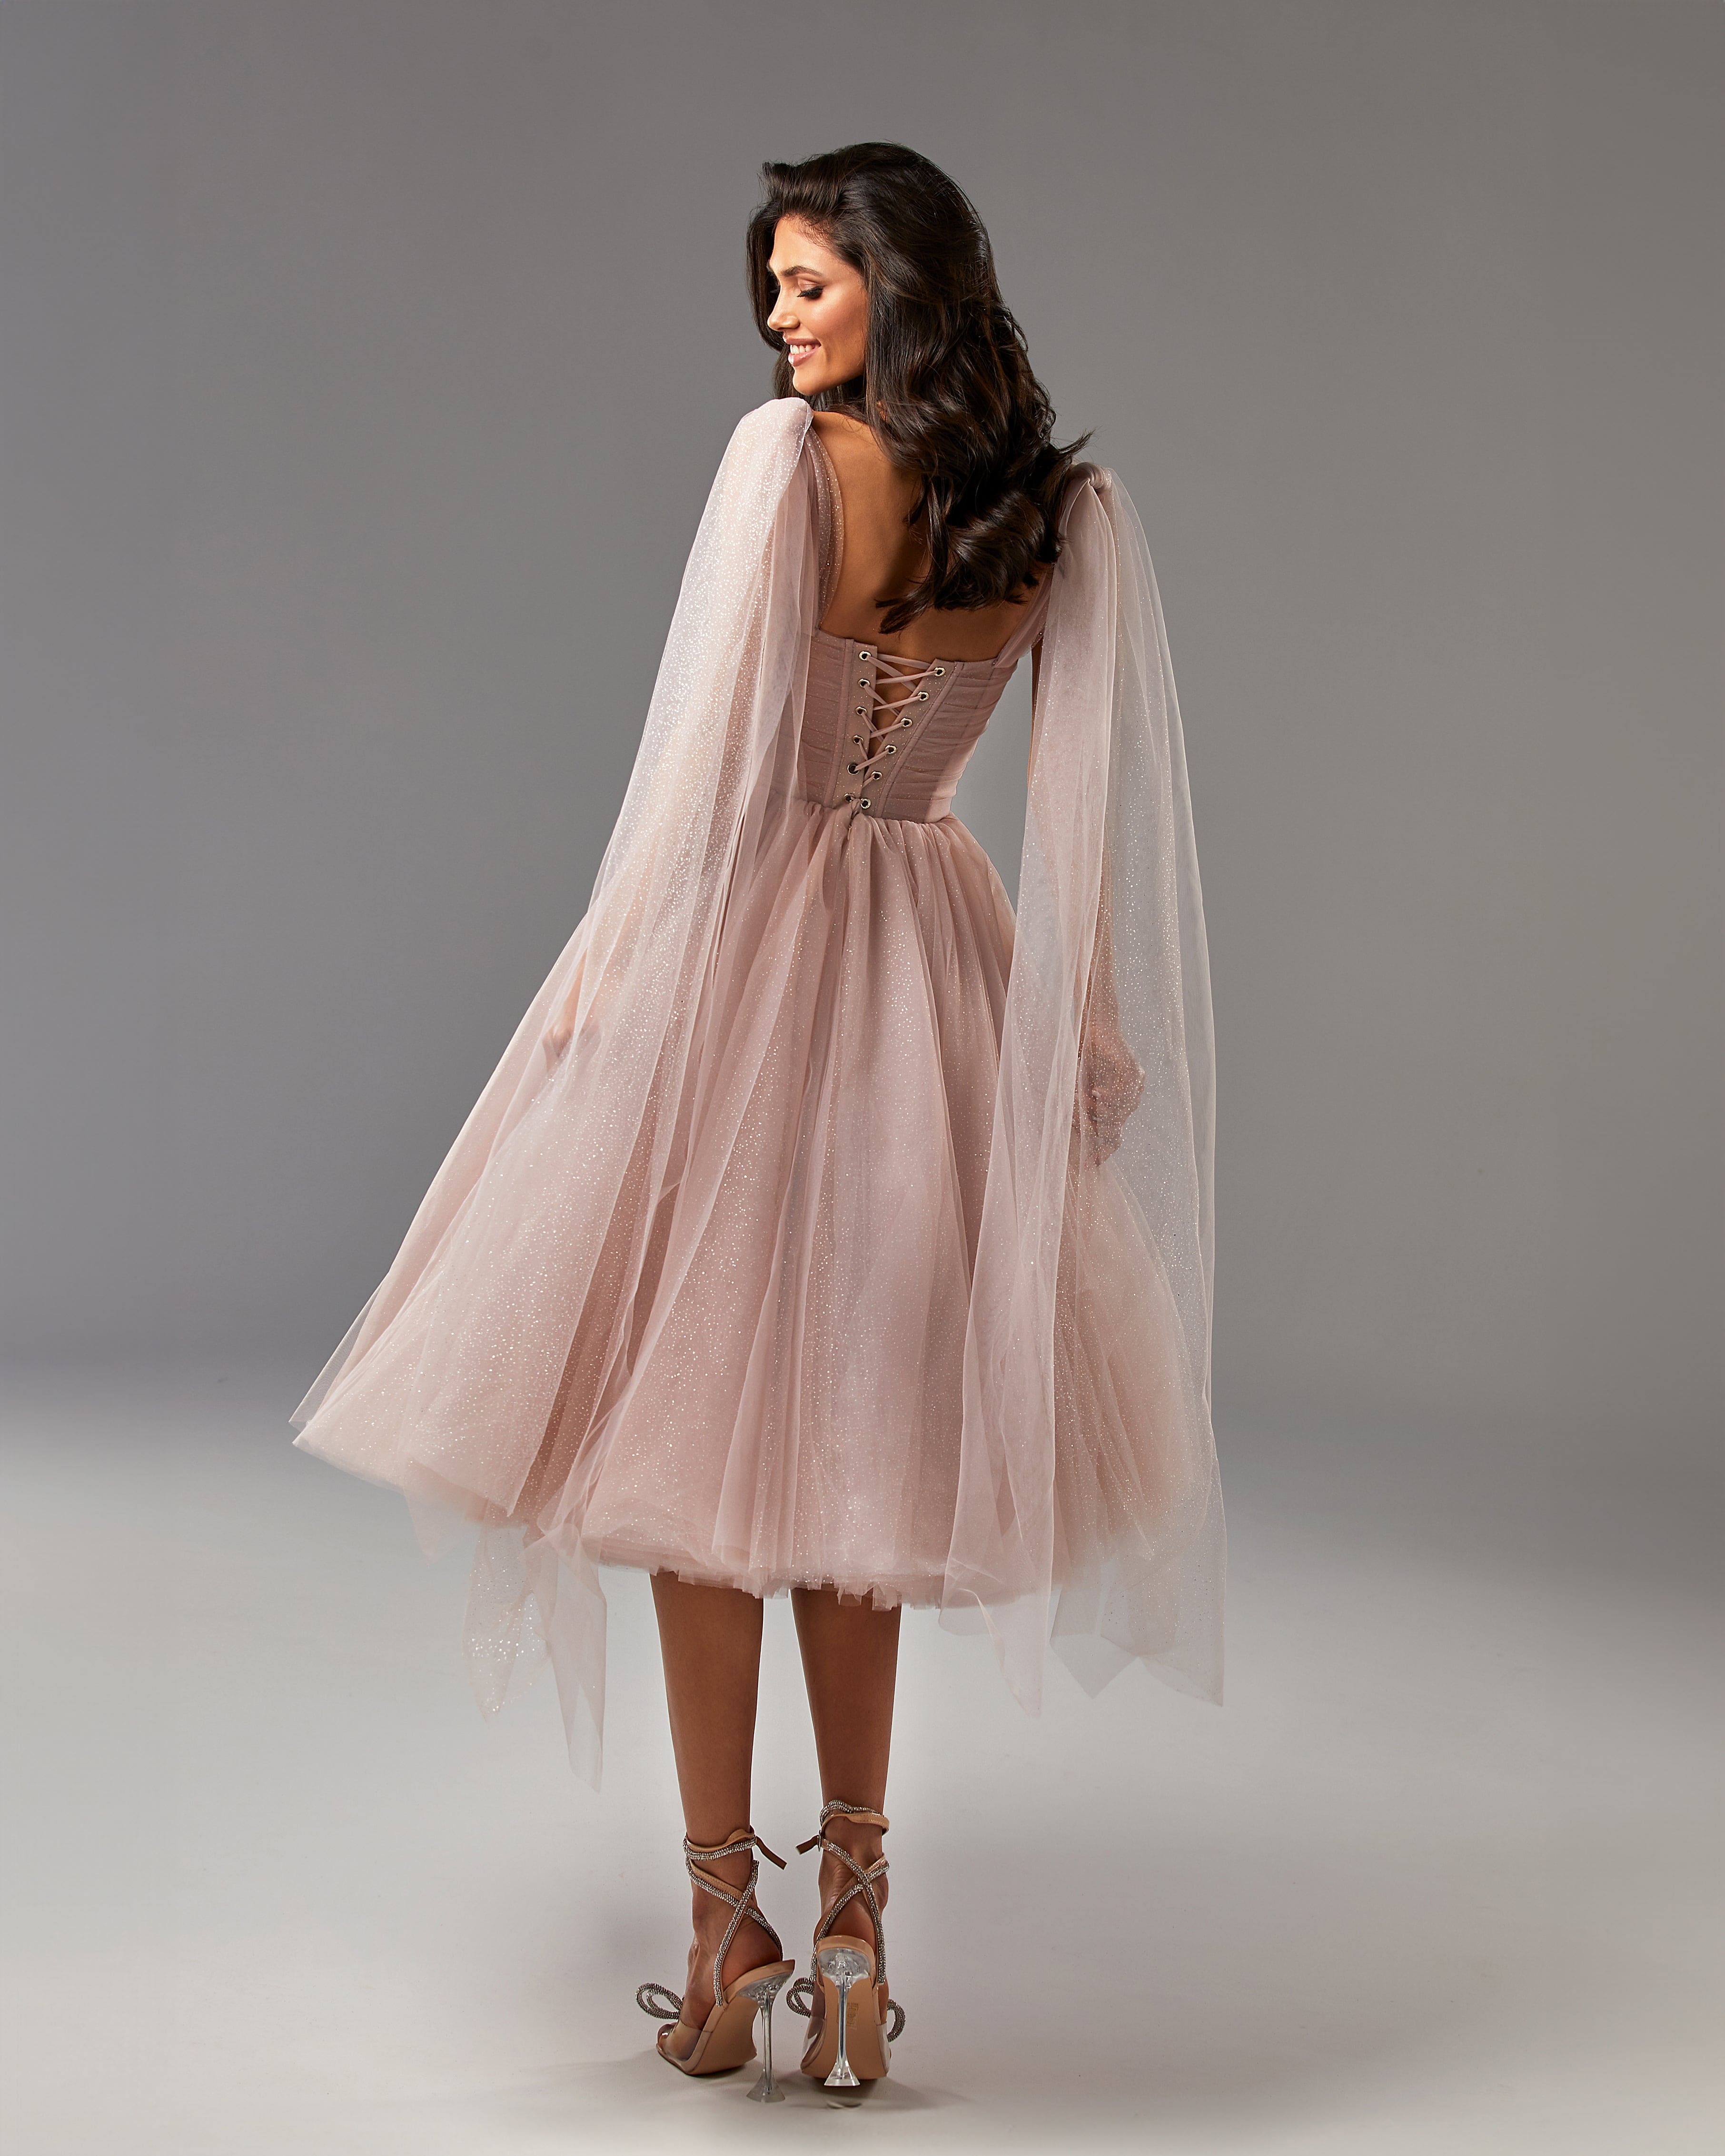 Misty Rose Sparkly off-the-shoulder tulle dress